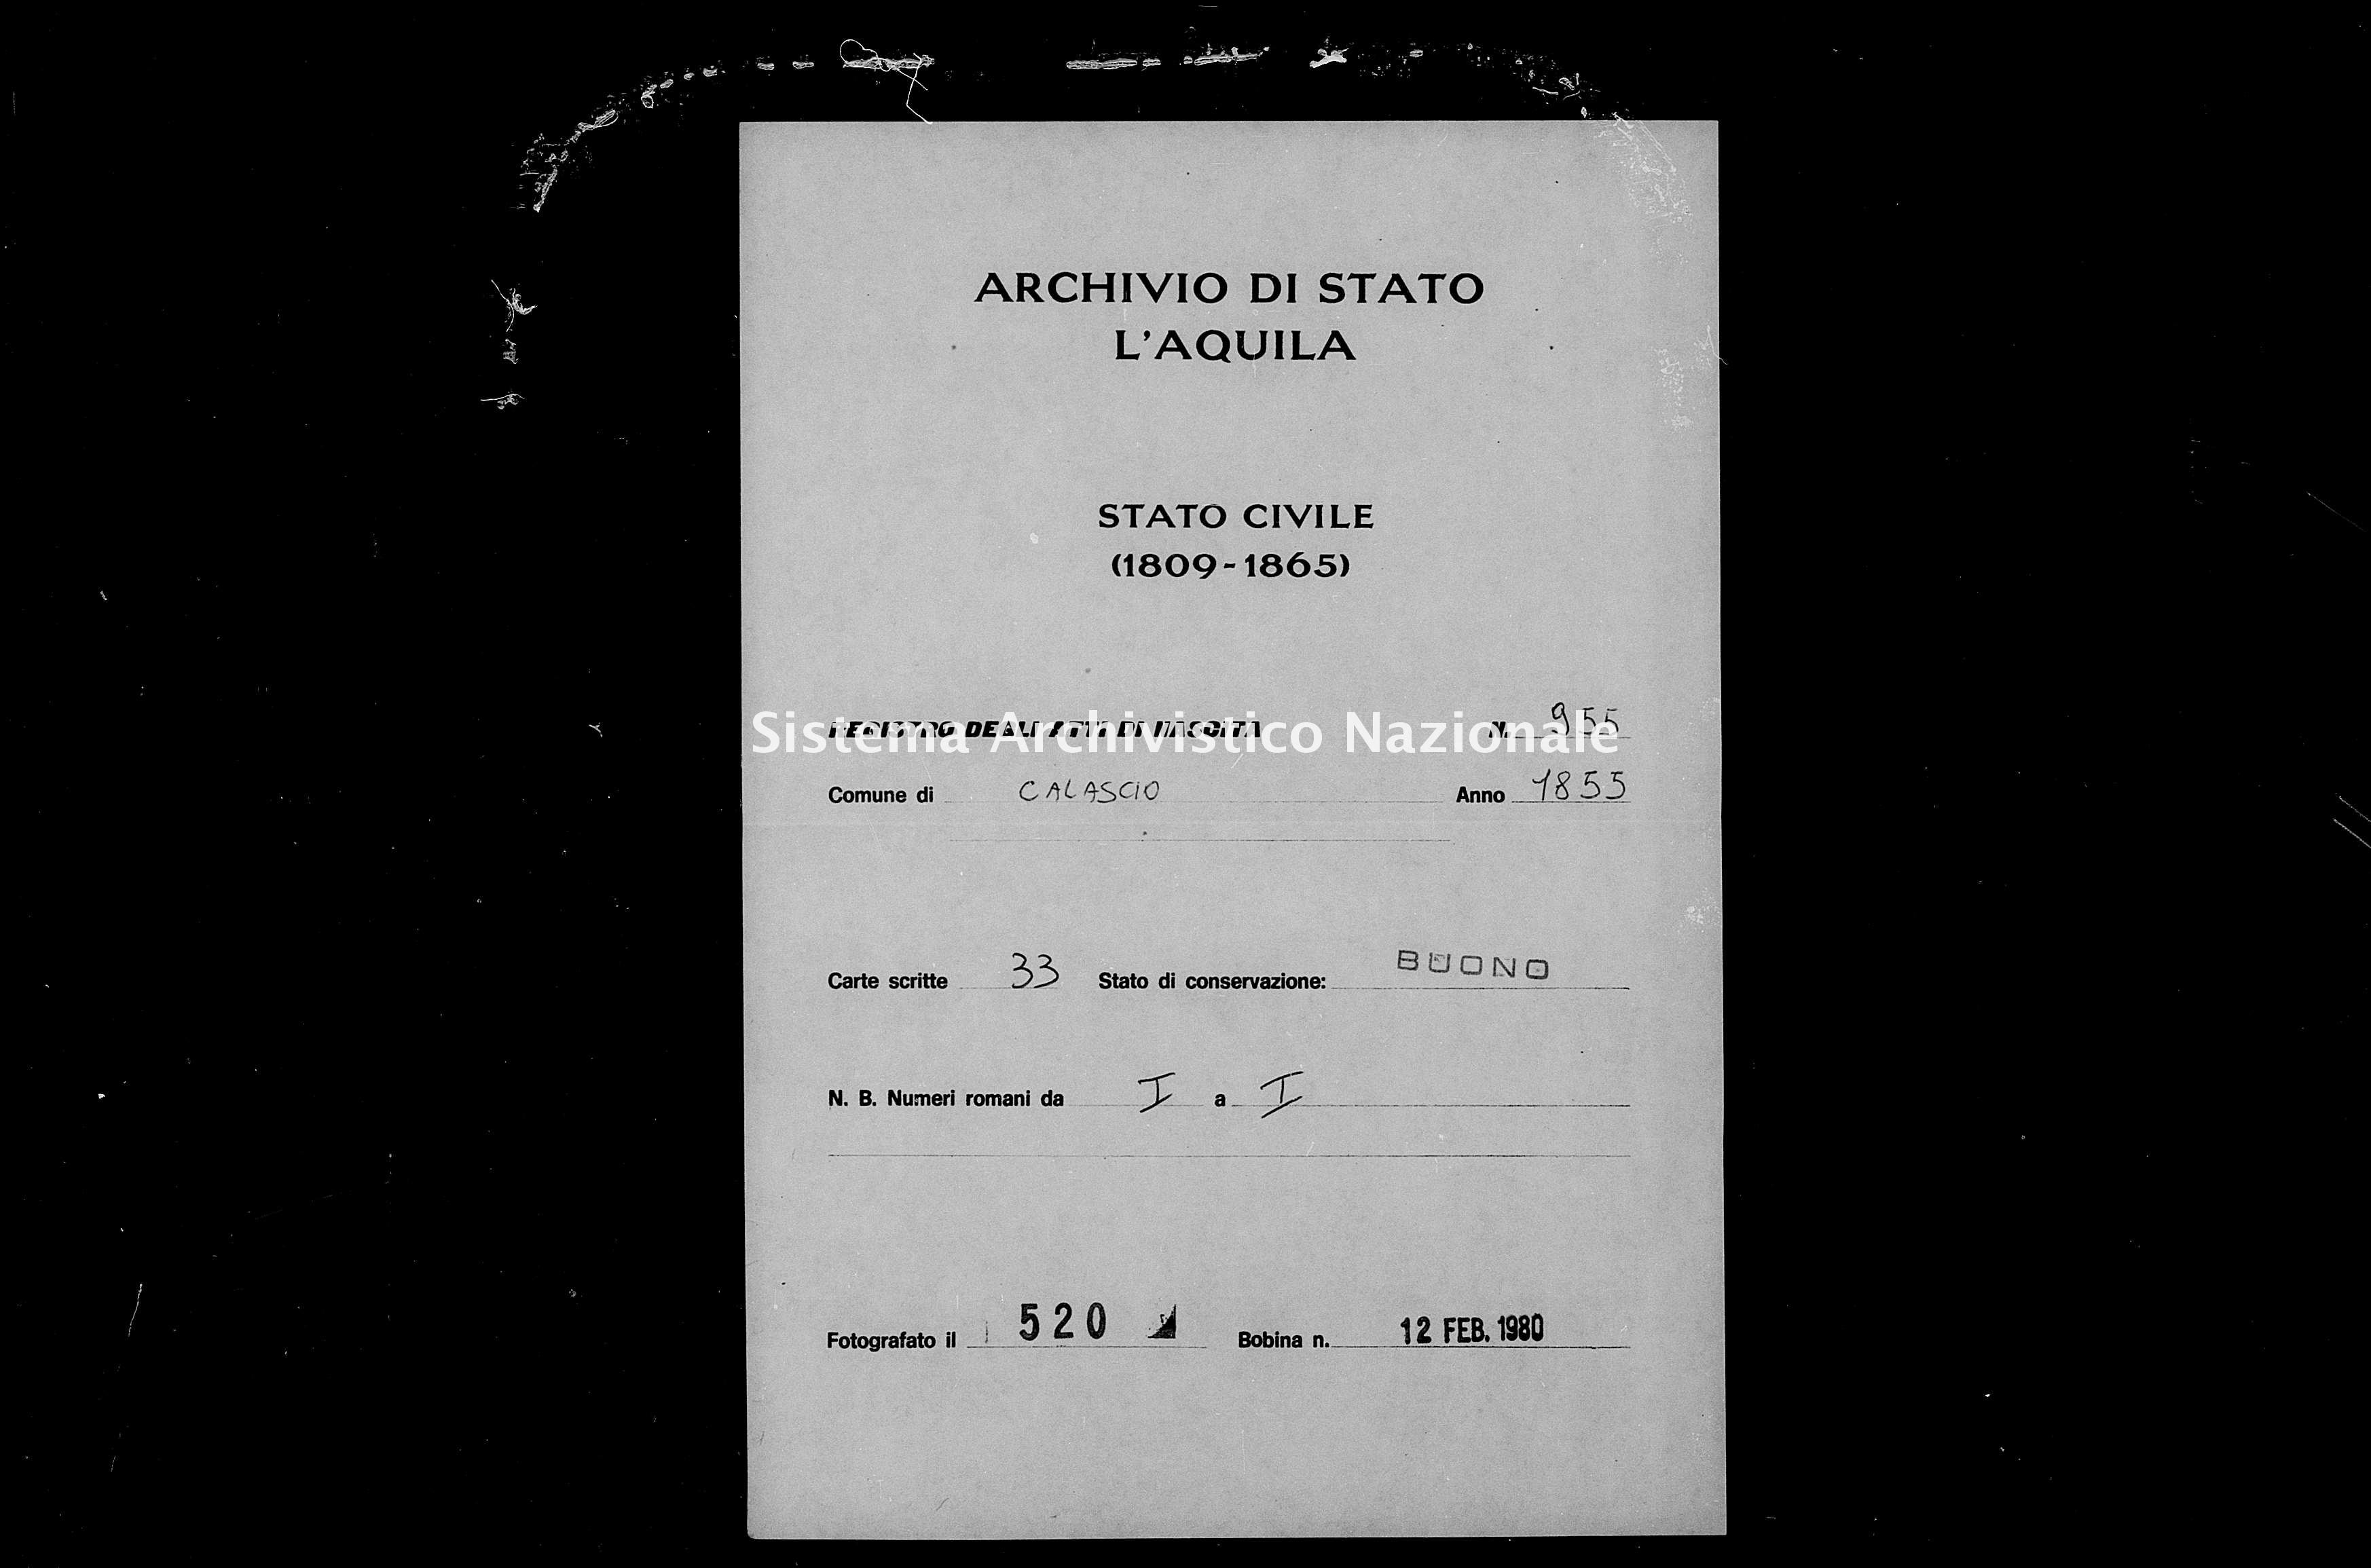 Archivio di stato di L'aquila - Stato civile della restaurazione - Calascio - Nati - 1855 - 955 -